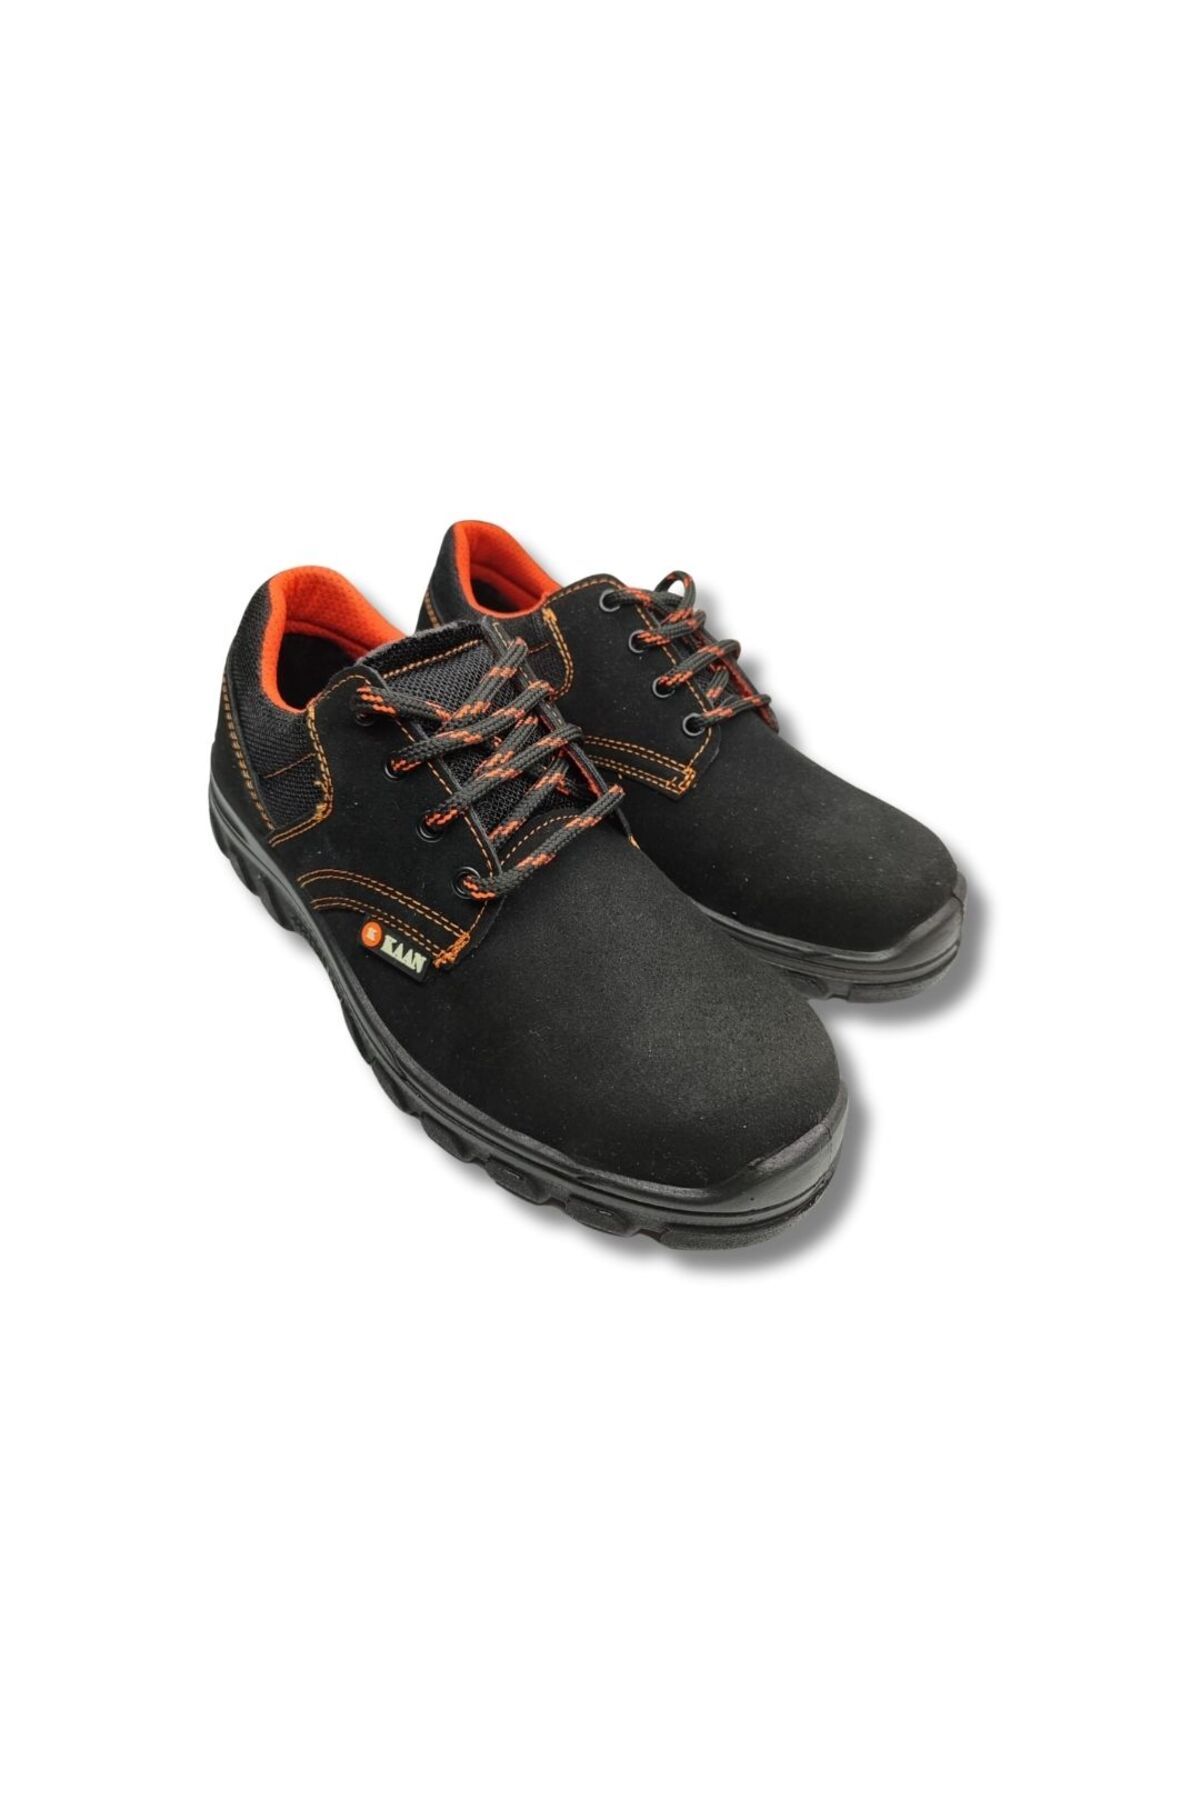 Kaan Çelik Burunlu Bağcıklı İş Ayakkabısı / Siyah